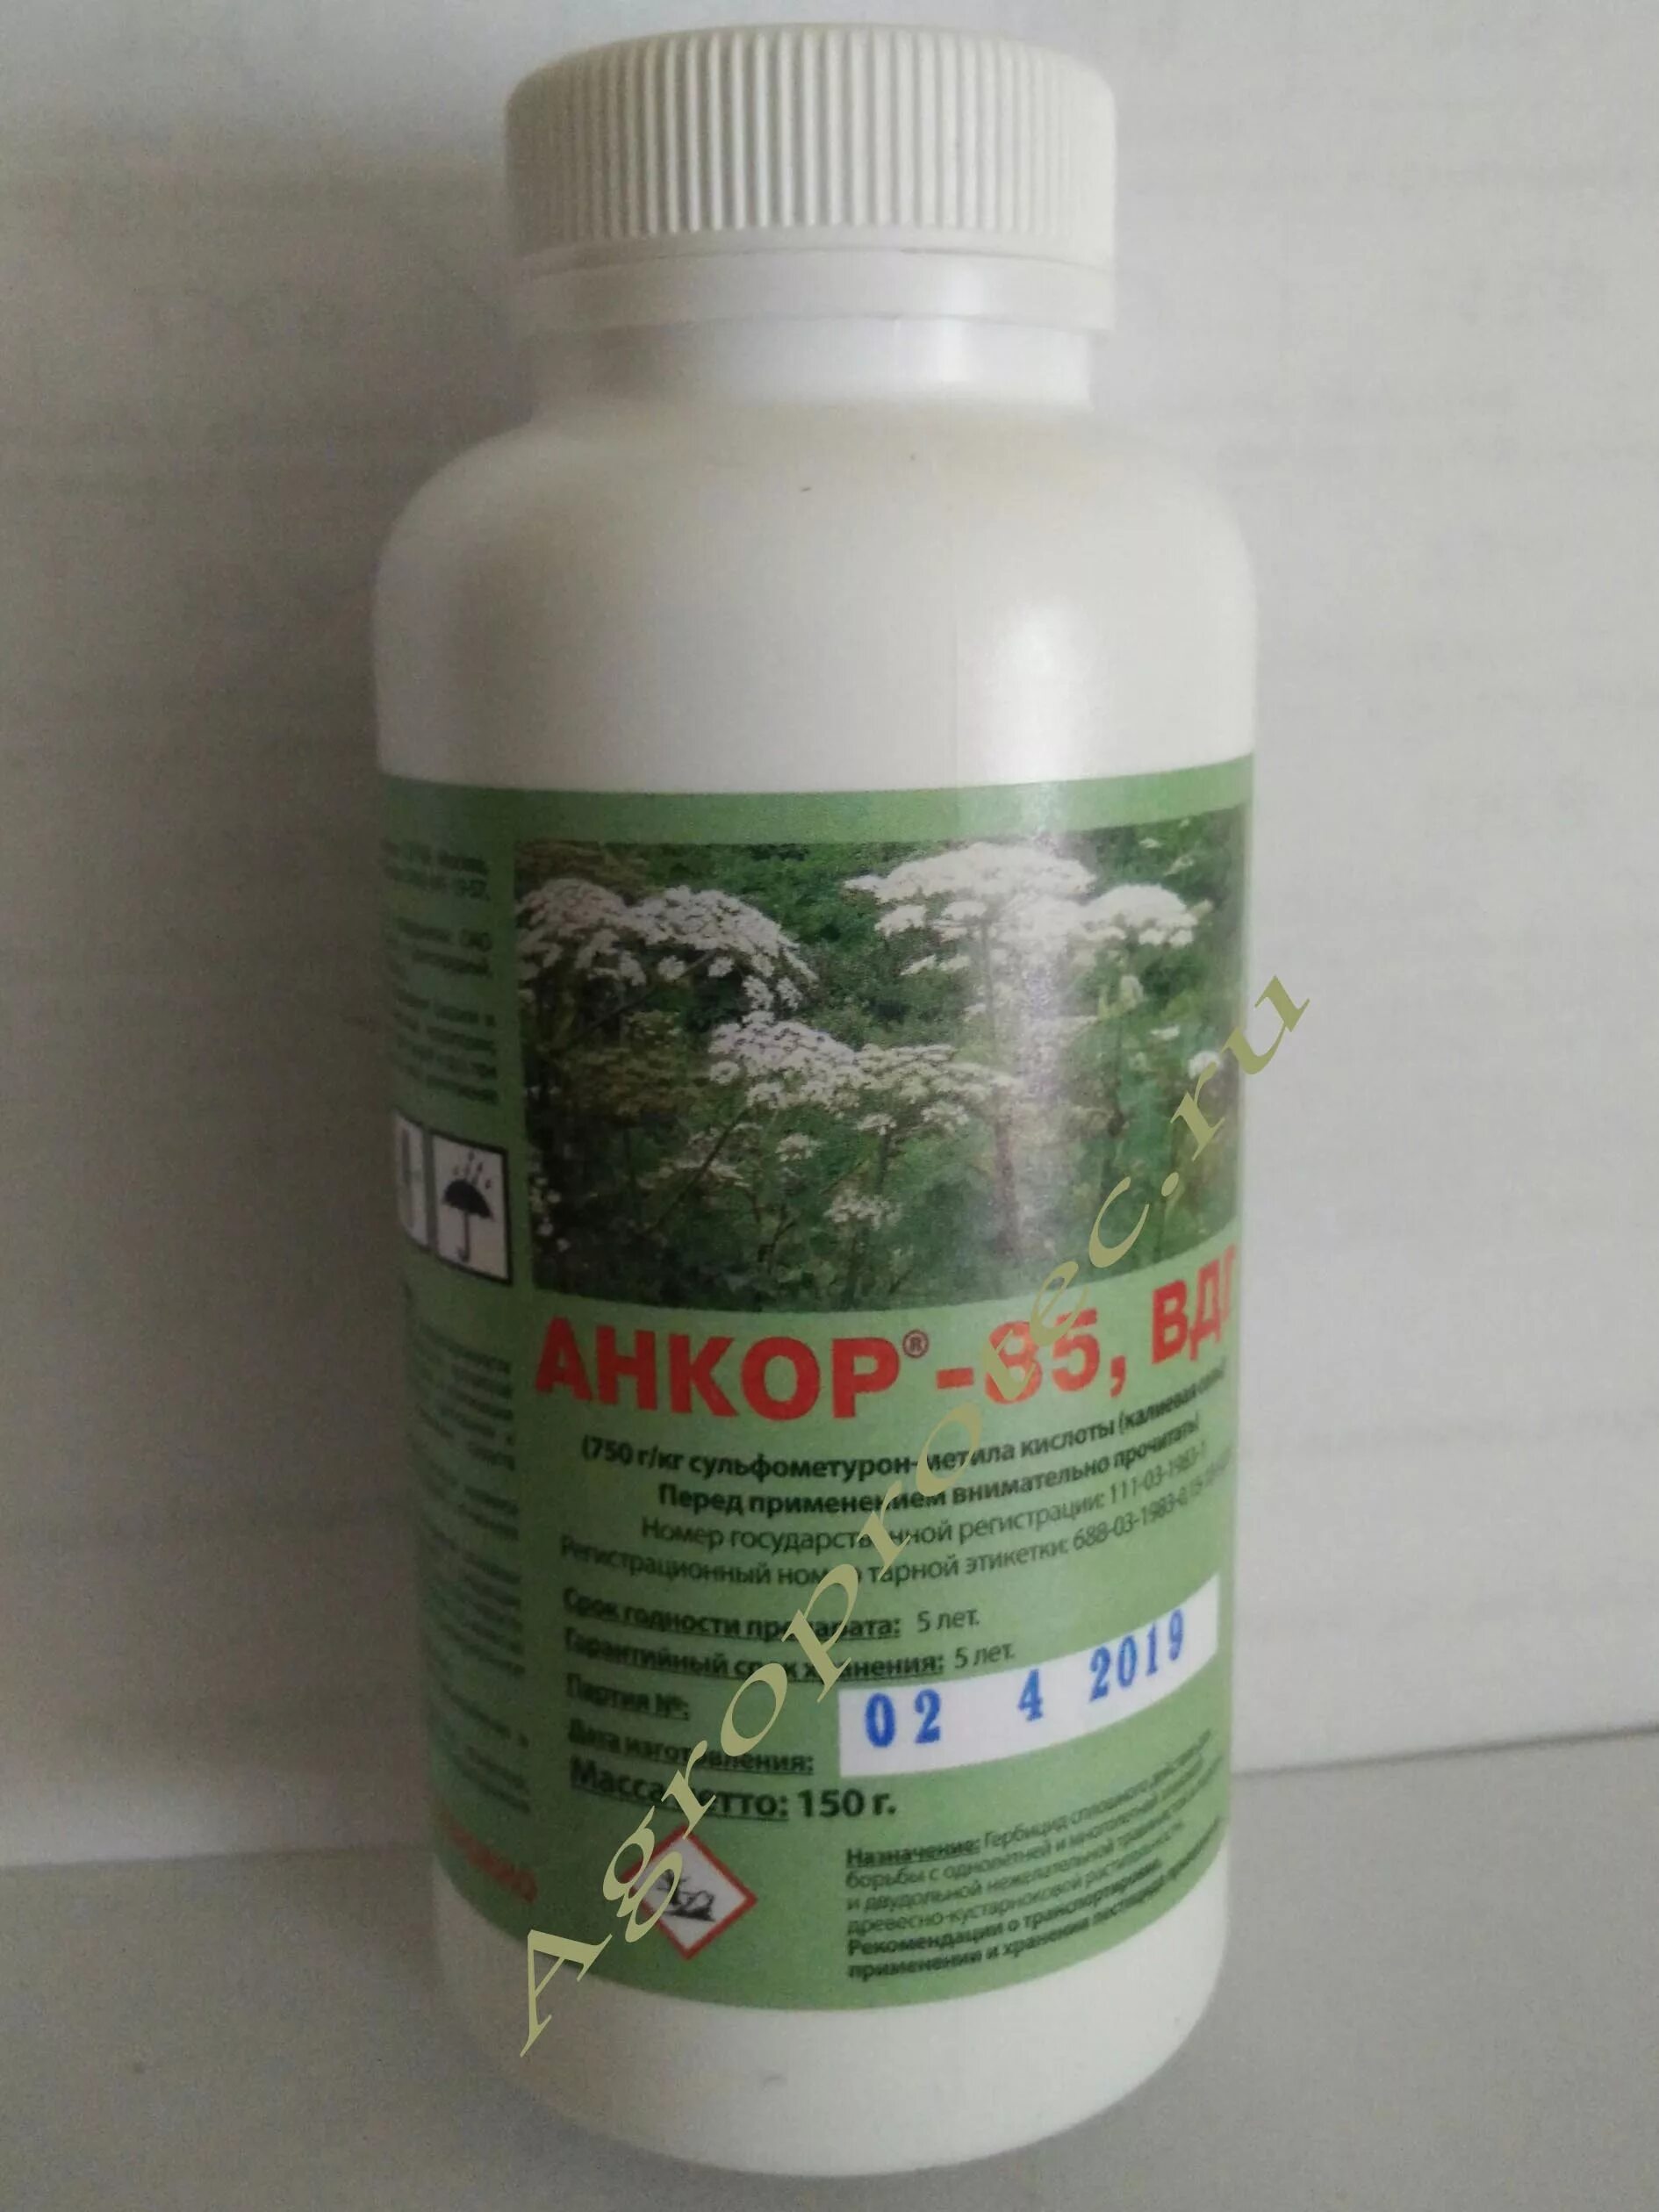 Анкор 85 ВДГ против борщевика. Анкор-85, ВДГ 0,12 кг производитель. Гримс гербицид. Гербицид от борщевика.